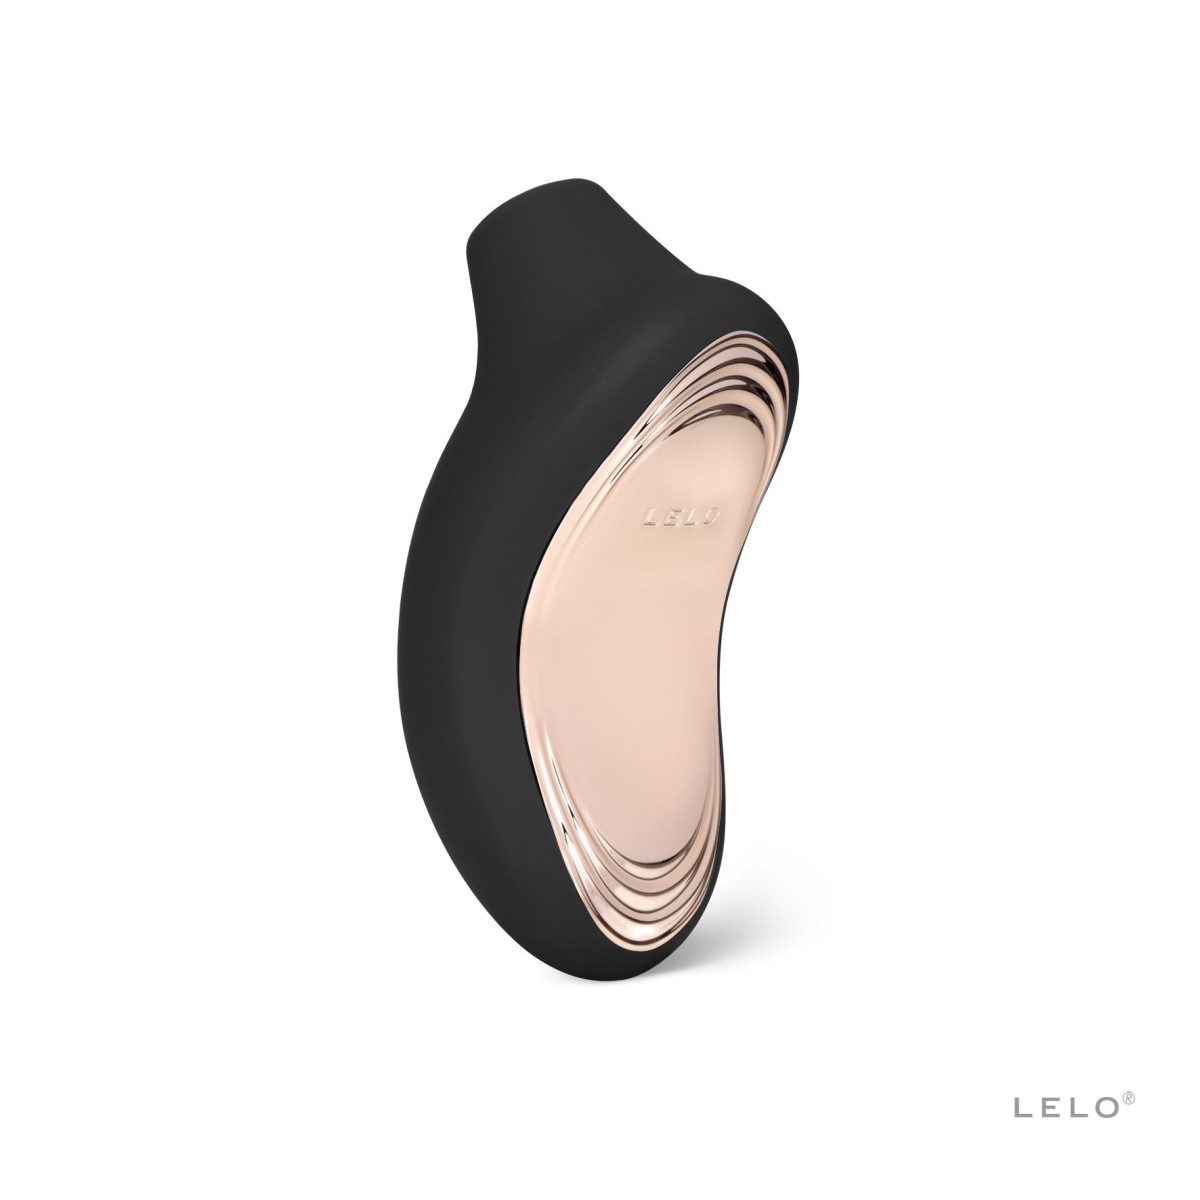 Stimulátor klitorisu LELO Sona 2 Black, luxusní sonický stimulátor klitorisu